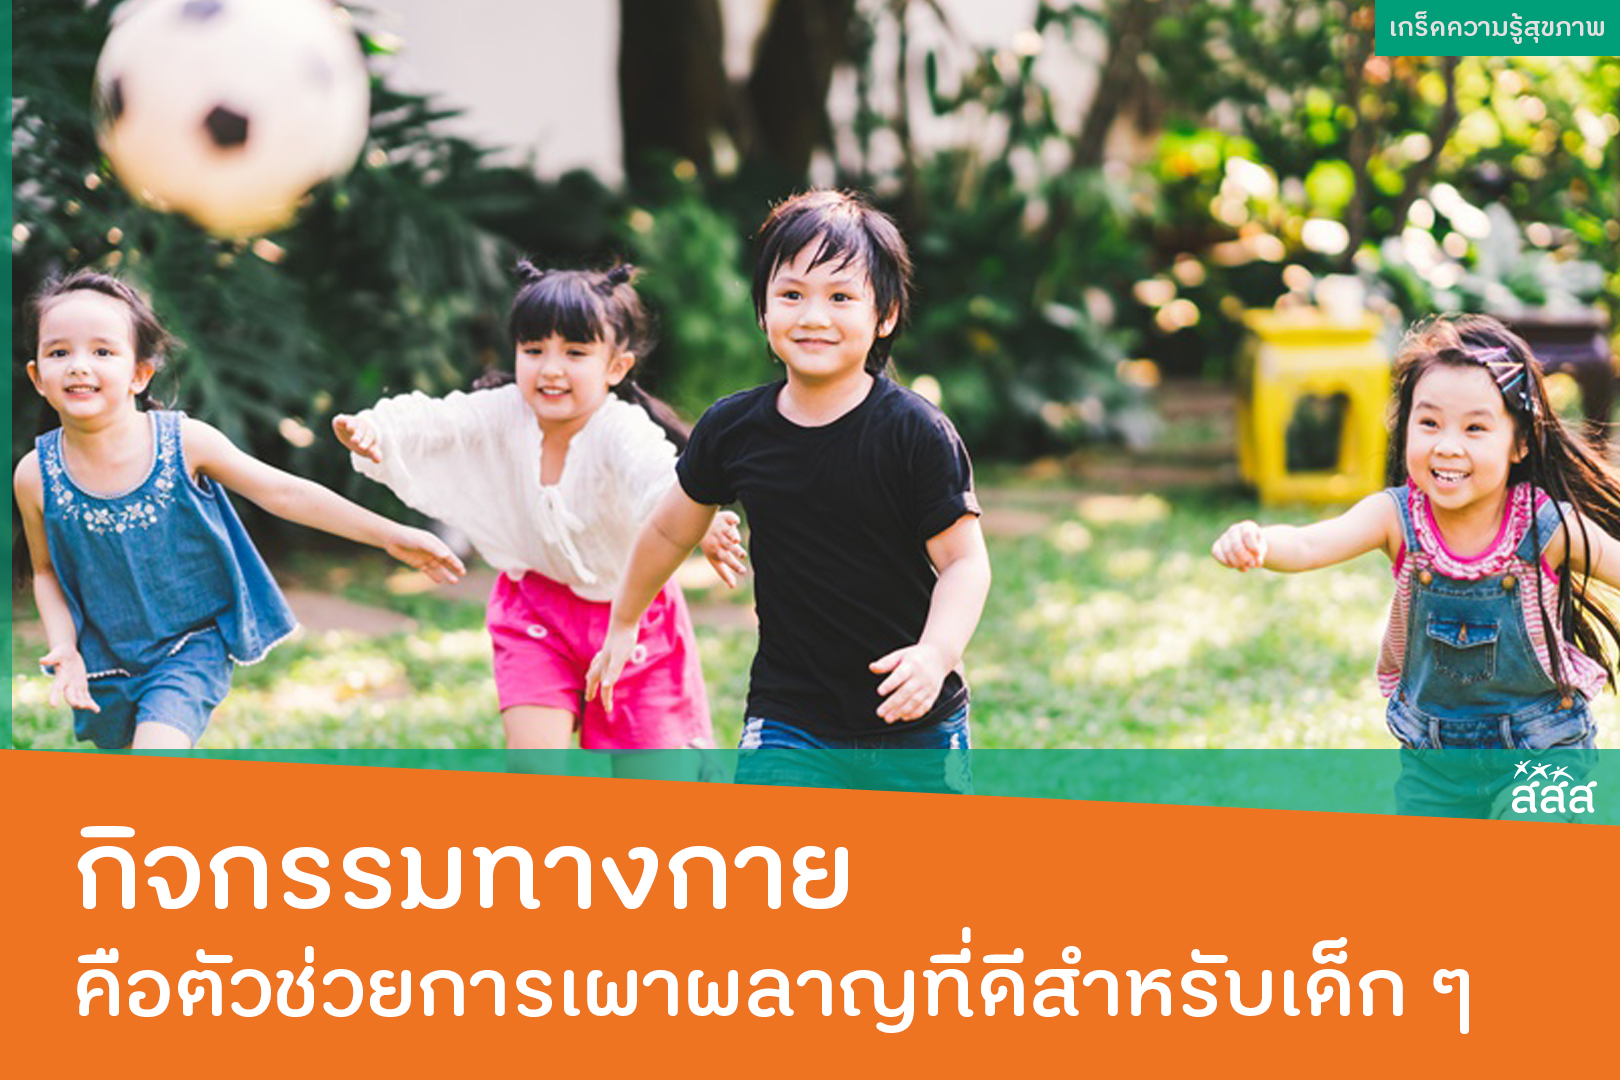 กิจกรรมทางกาย คือตัวช่วยการเผาผลาญที่ดีสำหรับเด็ก ๆ thaihealth